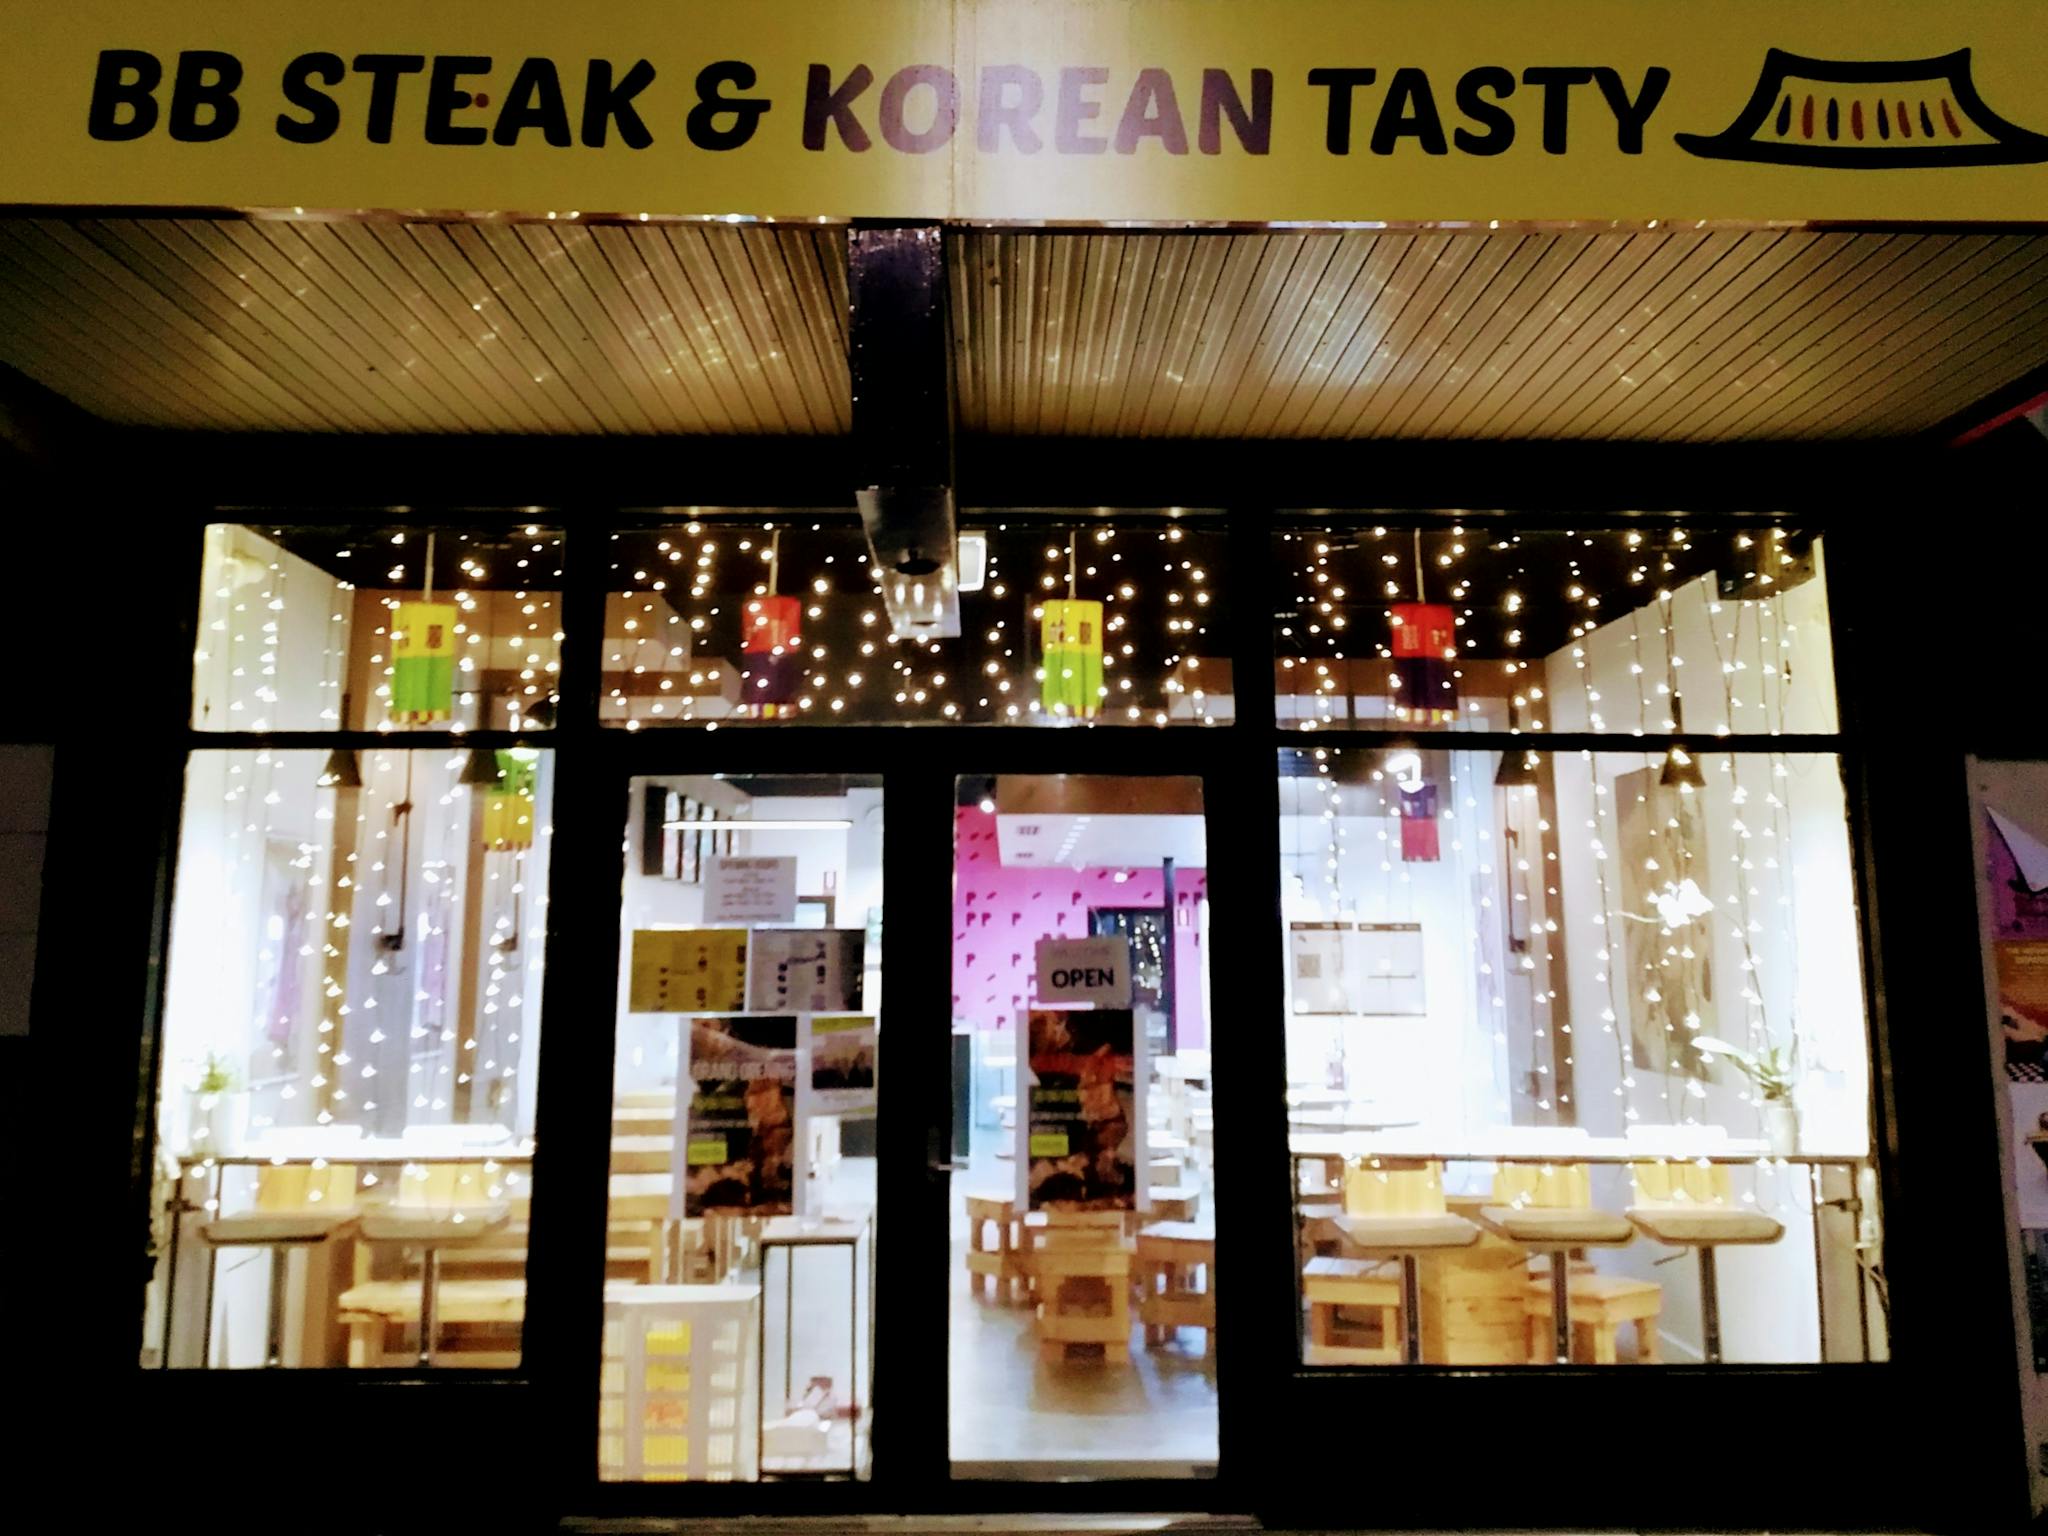 BB Steak & Korean Tasty Slider Image 1